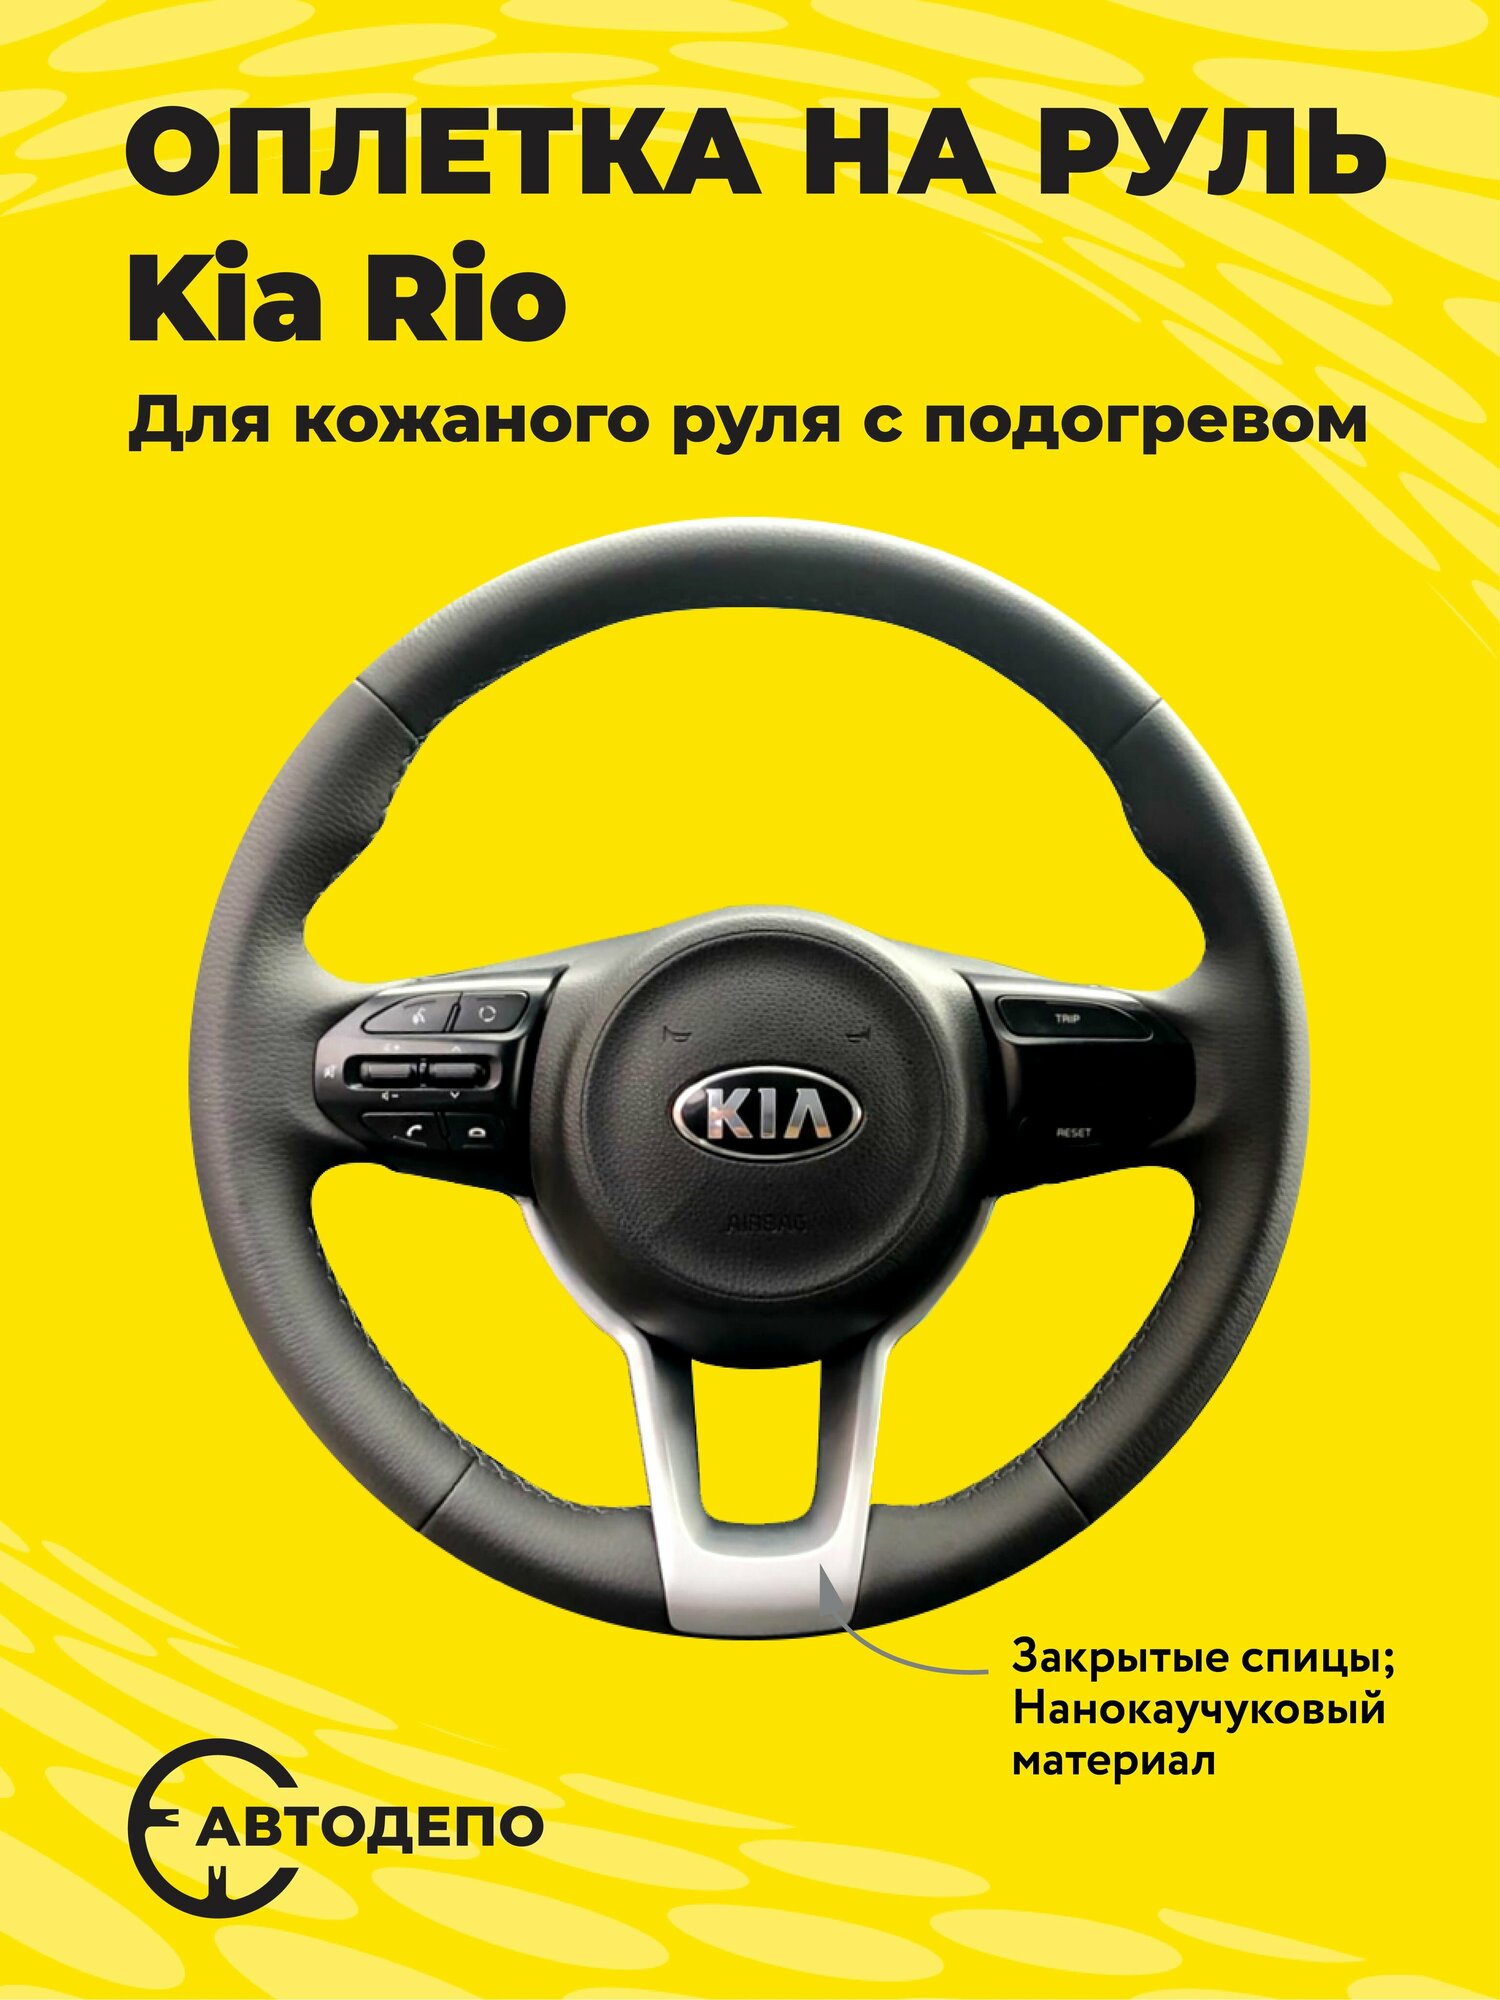 Оплетка на руль Kia Rio для кожаного руля с подогревом, черная кожа с черным швом.